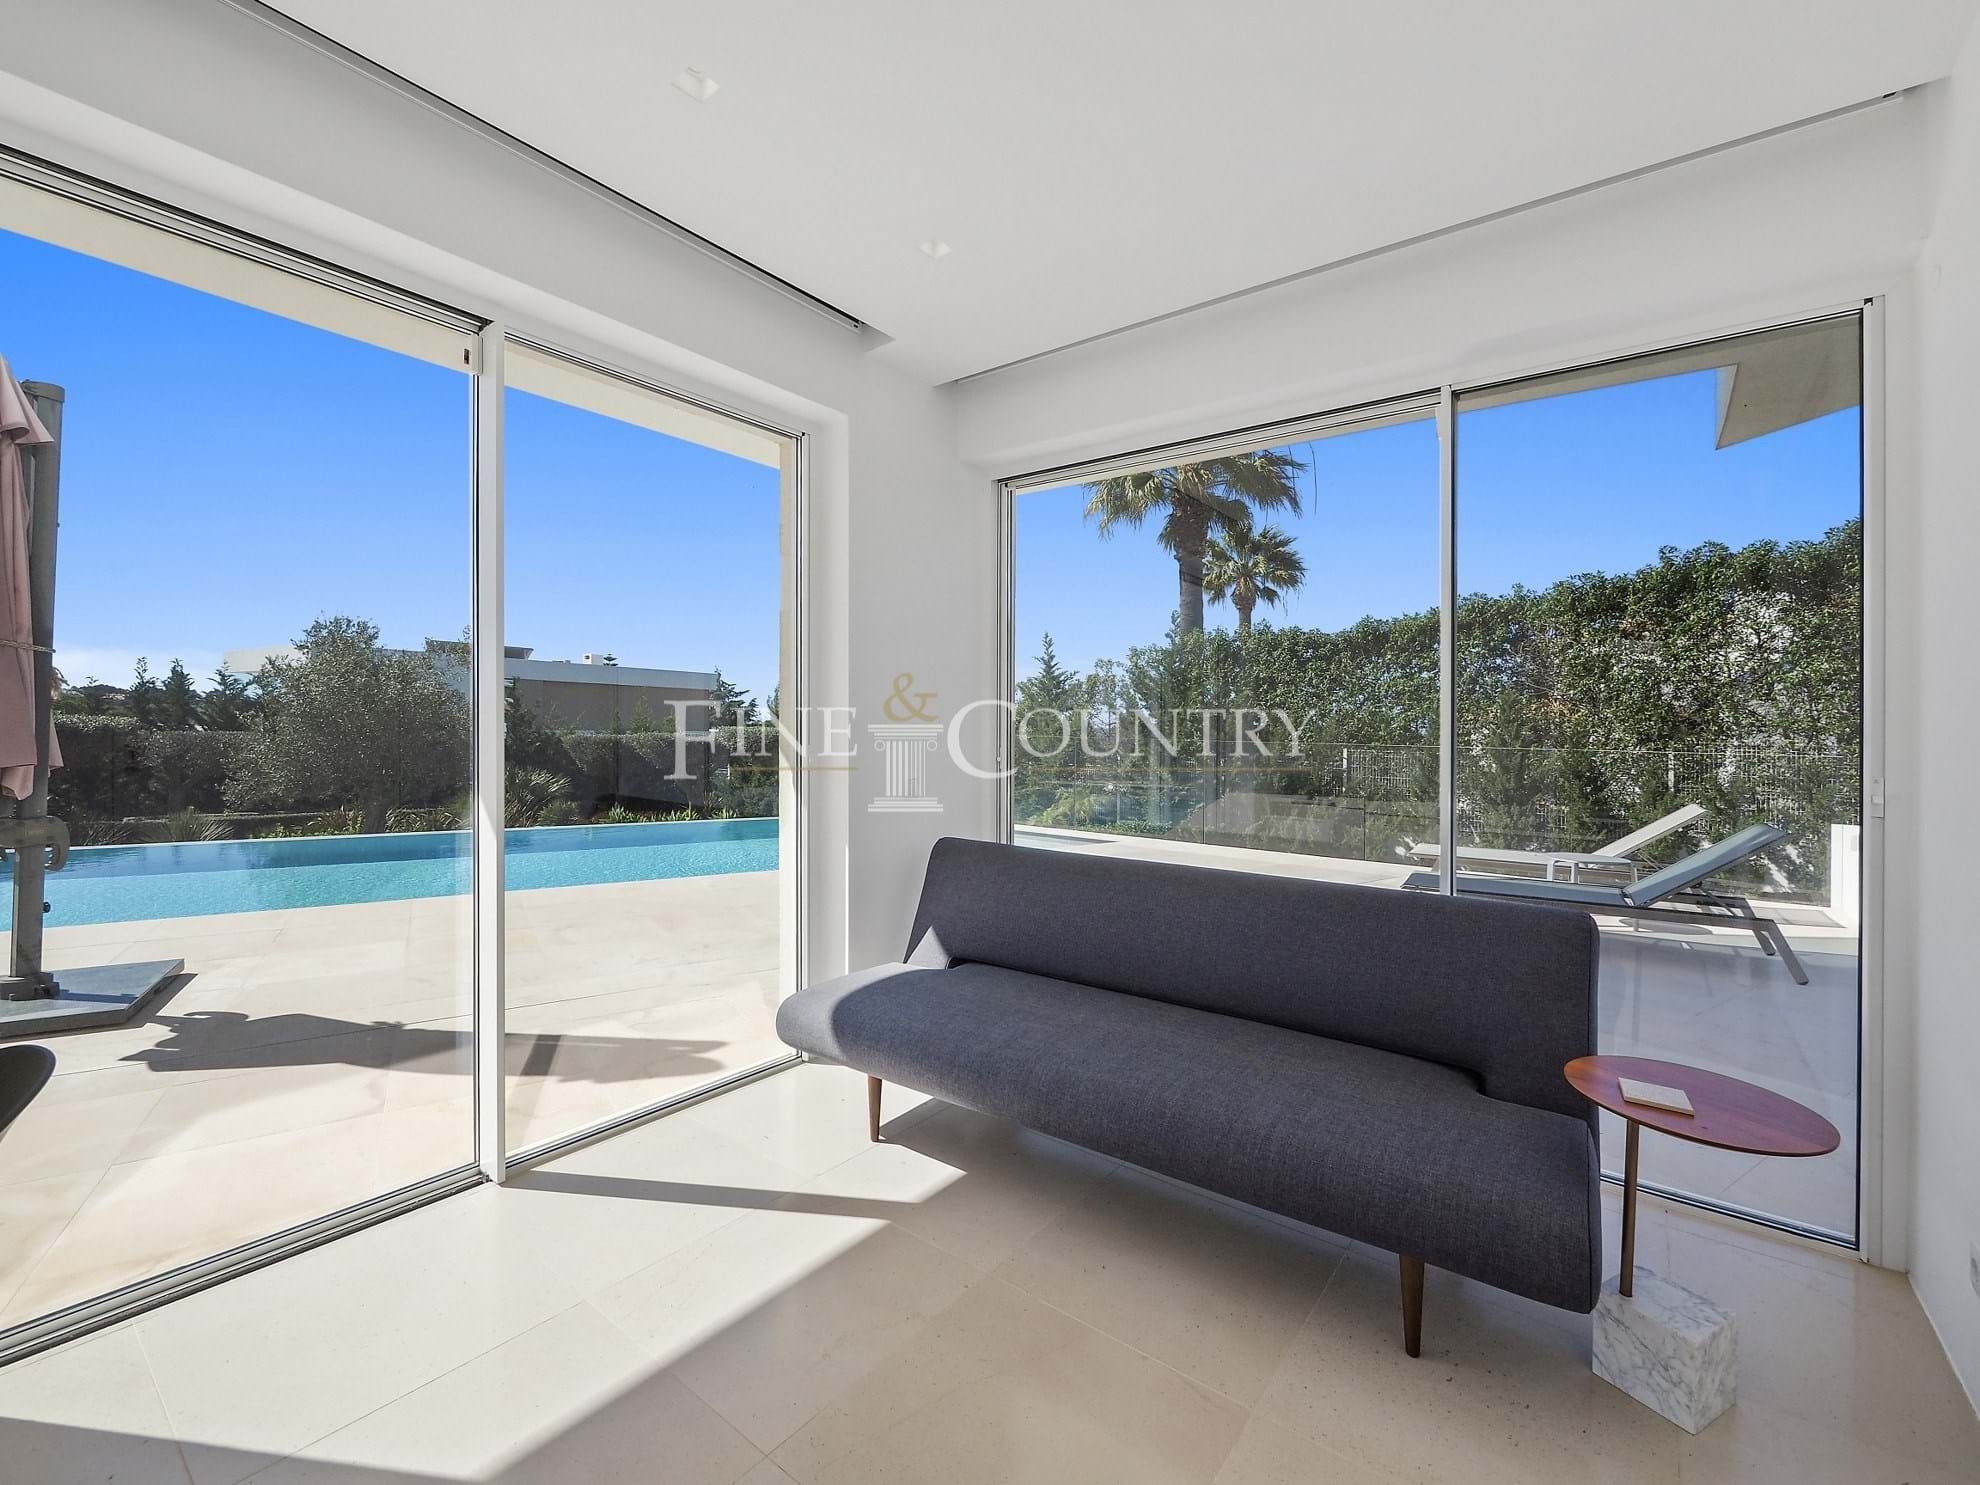 Photo of Carvoeiro - Contemporary 4-bedroom villa close to Carvoeiro